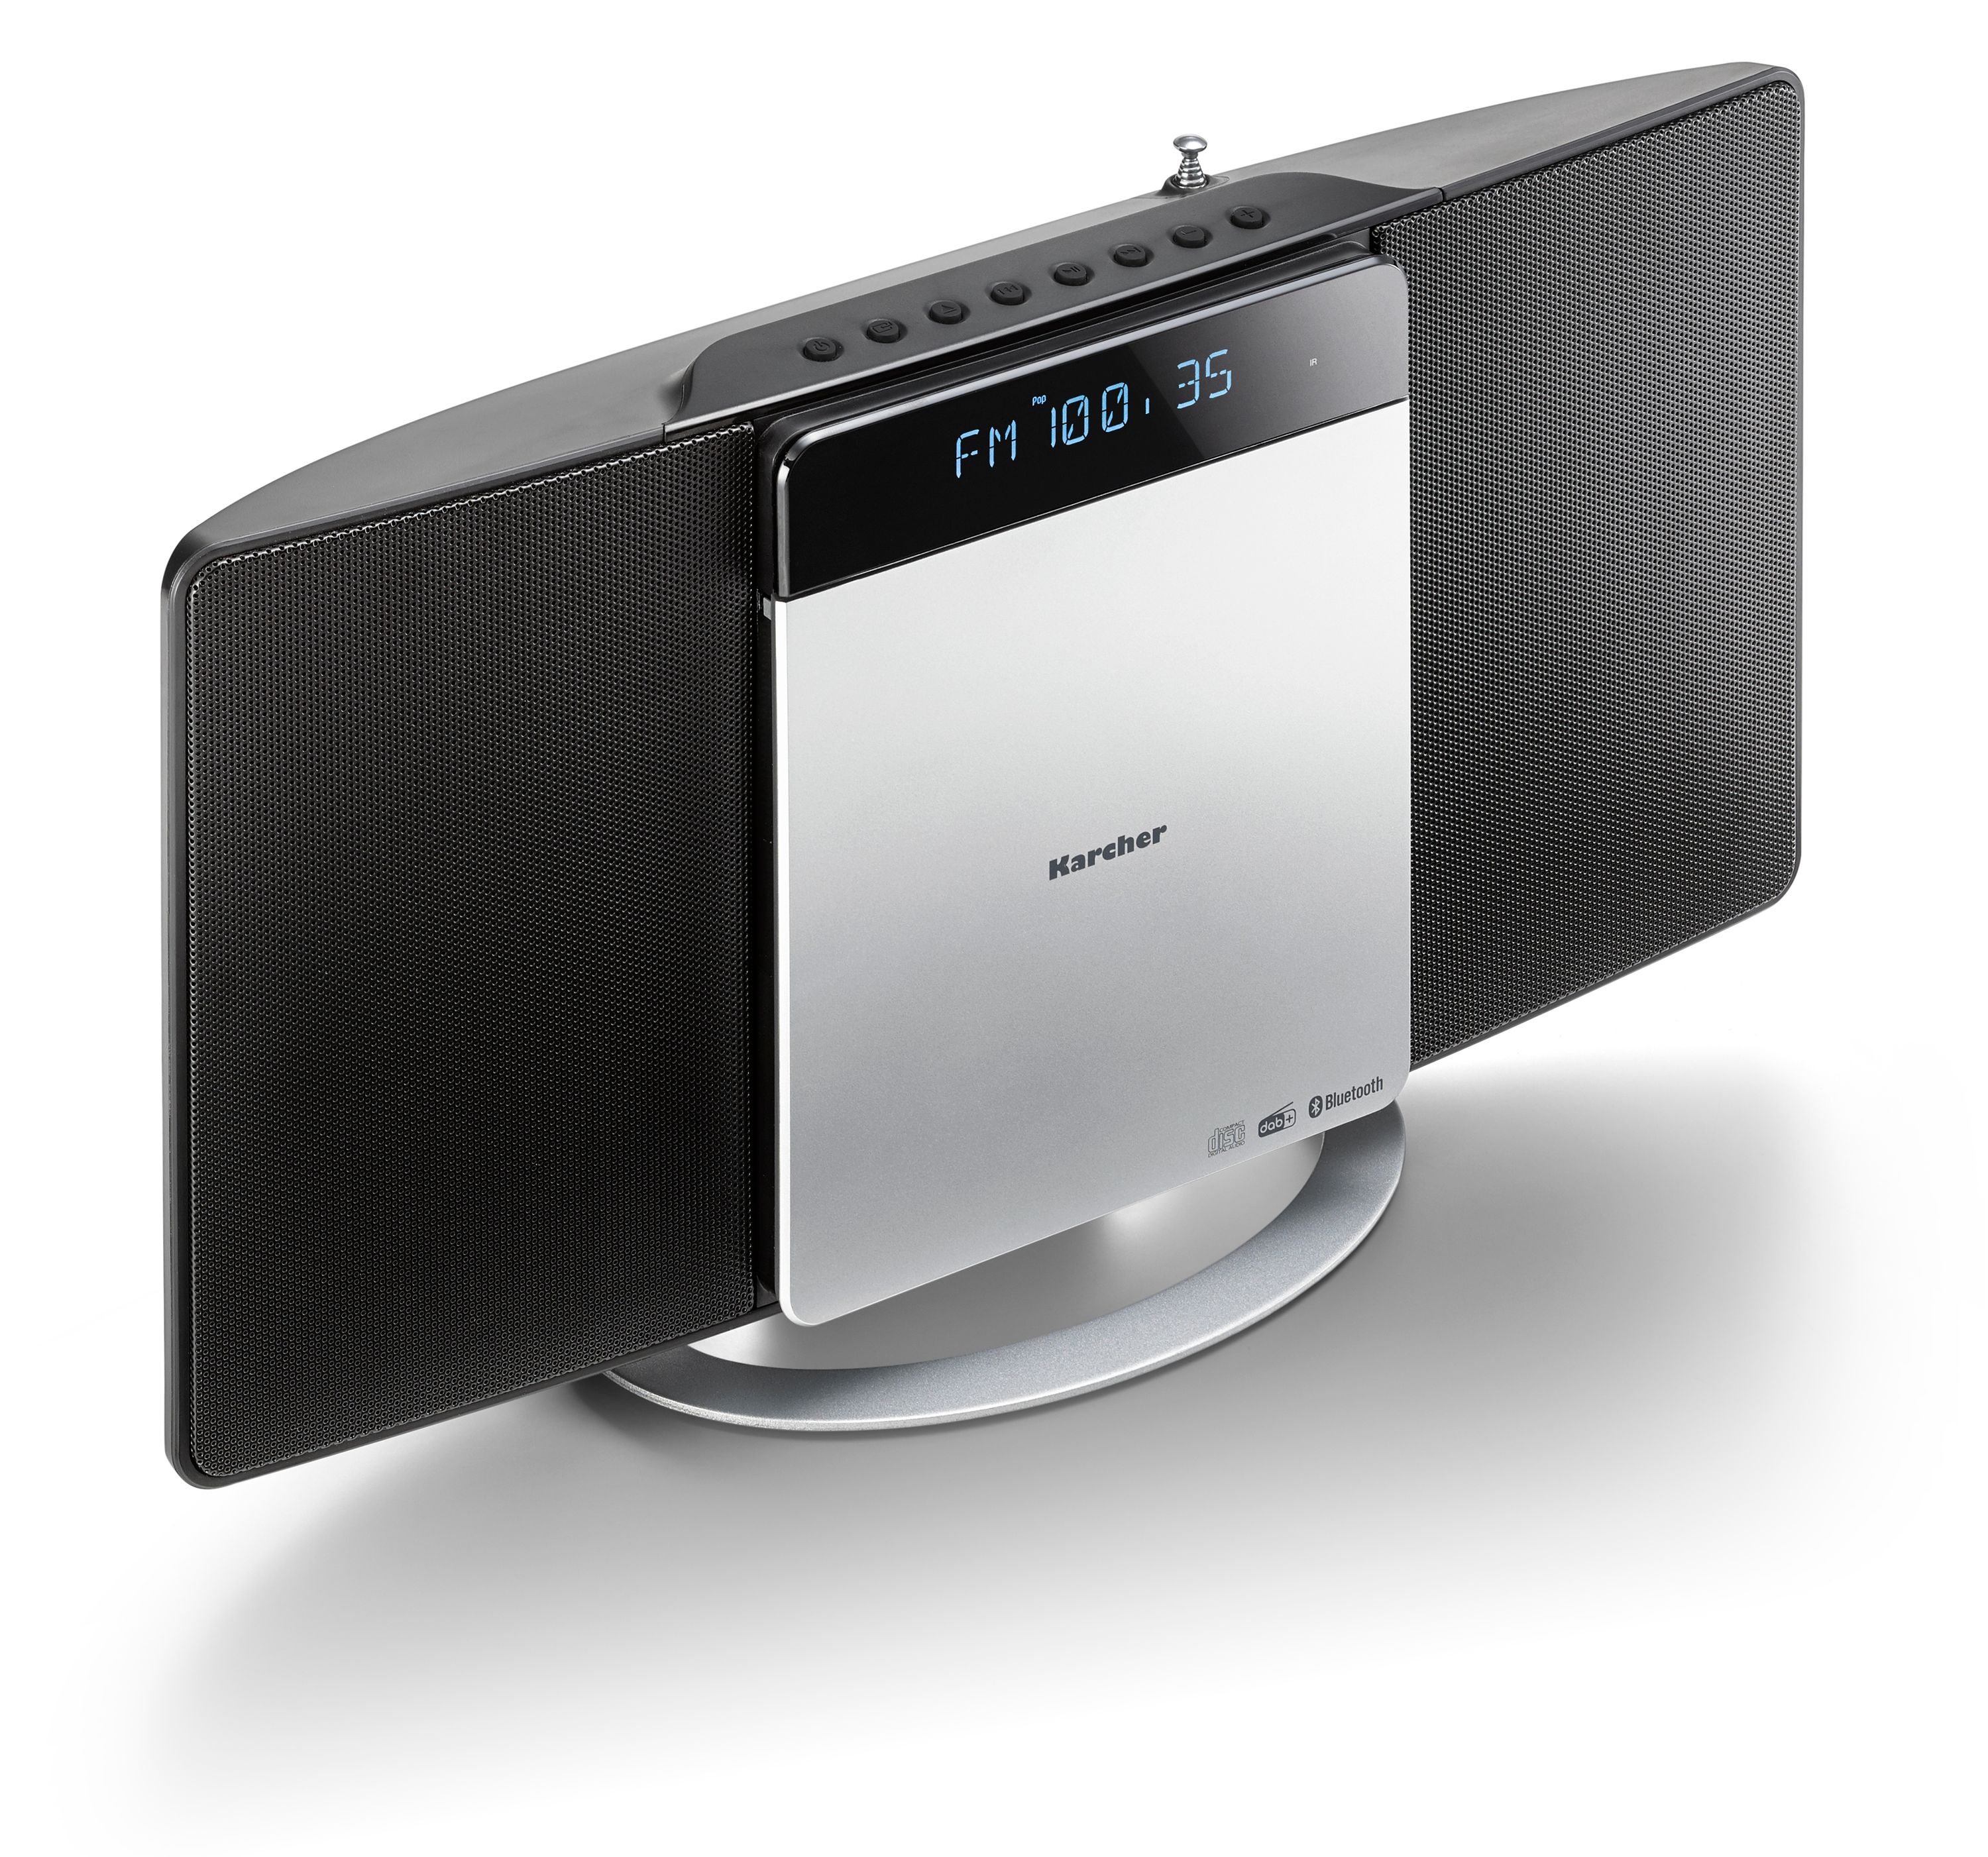 UNIVERSUM Stereoanlage MS 300-21, CD, DAB+ Radio, Bluetooth, USB, schwarz  online kaufen